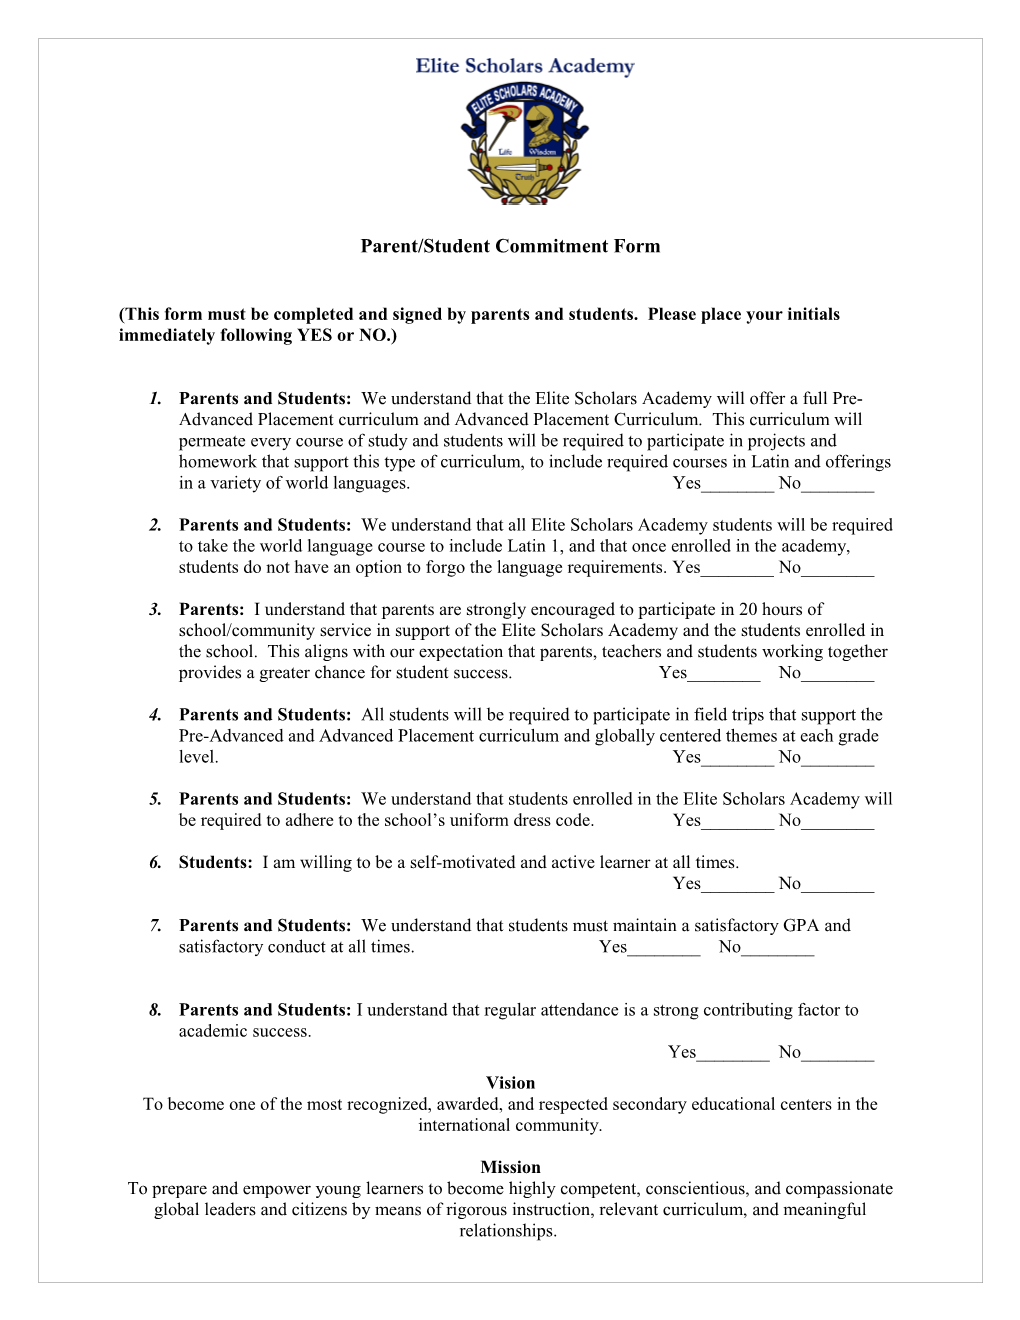 Parent/Student Commitment Form